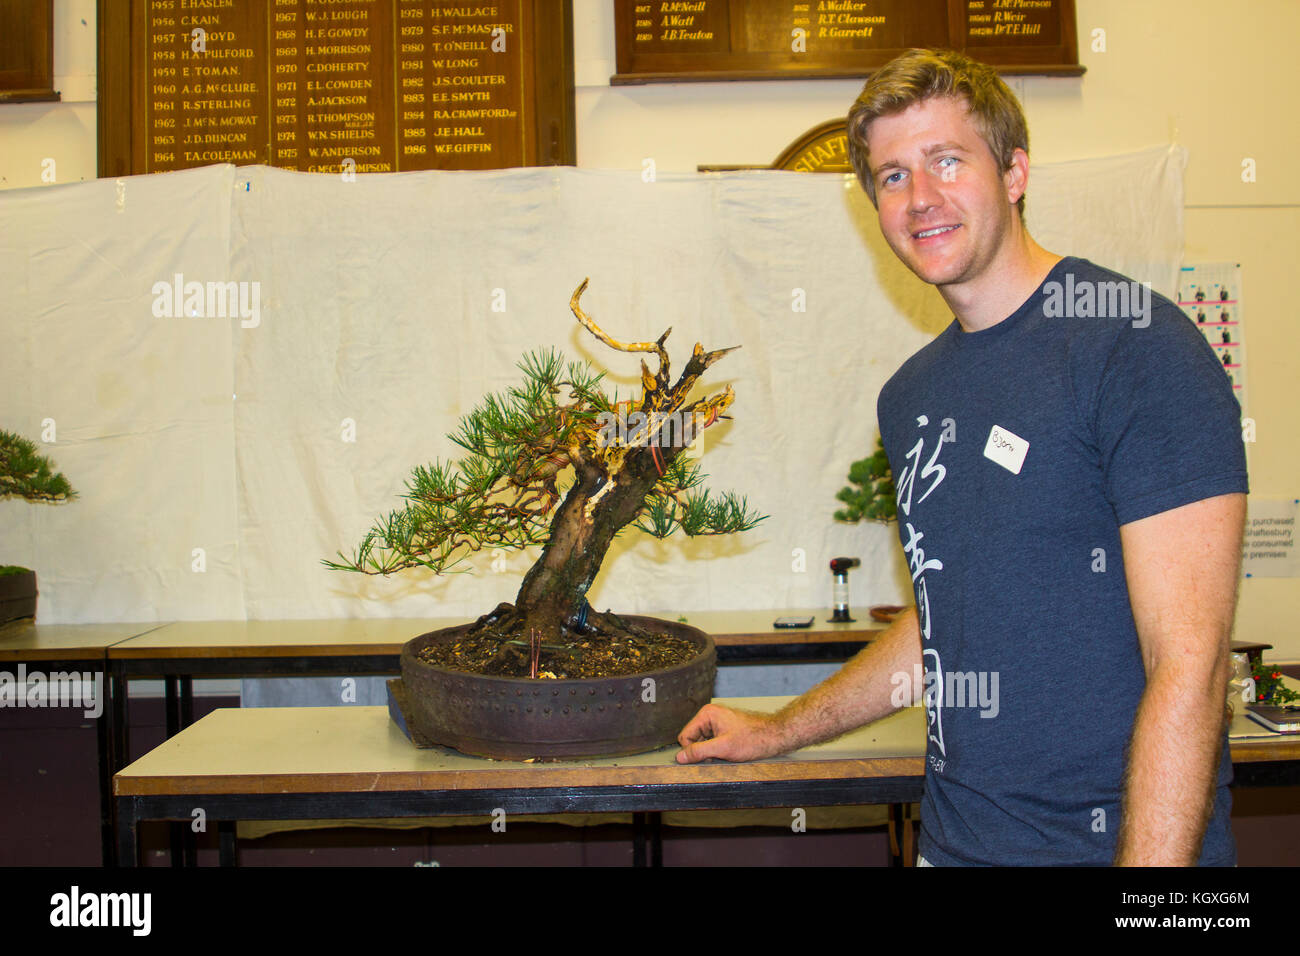 Bjorholm Bjorholm au début de la création d'un bonsai de PIN écossais (Pinus Sylvestris) lors d'une manifestation publique à Belfast, en Irlande du Nord Banque D'Images